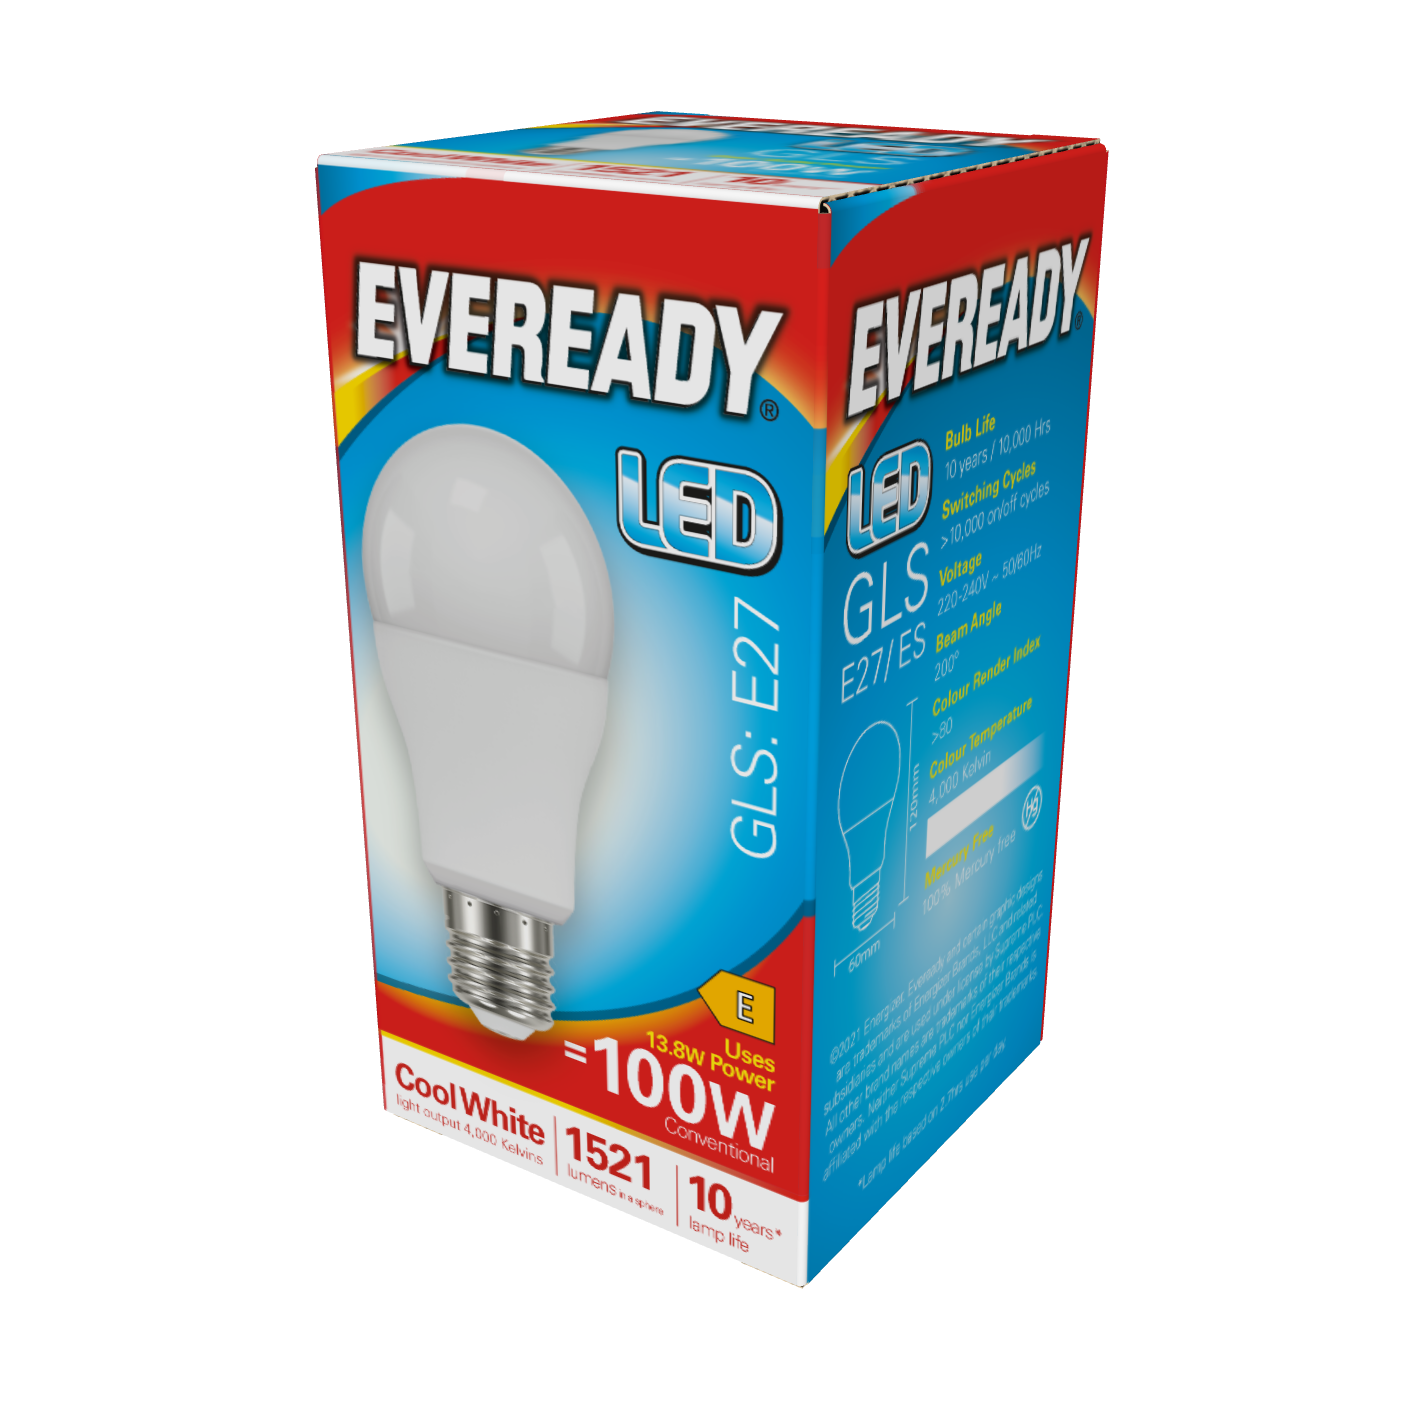 Eveready LED GLS E27 (ES) 1.521lm 13,8W 4.000K (Blanco Frío), Caja de 1